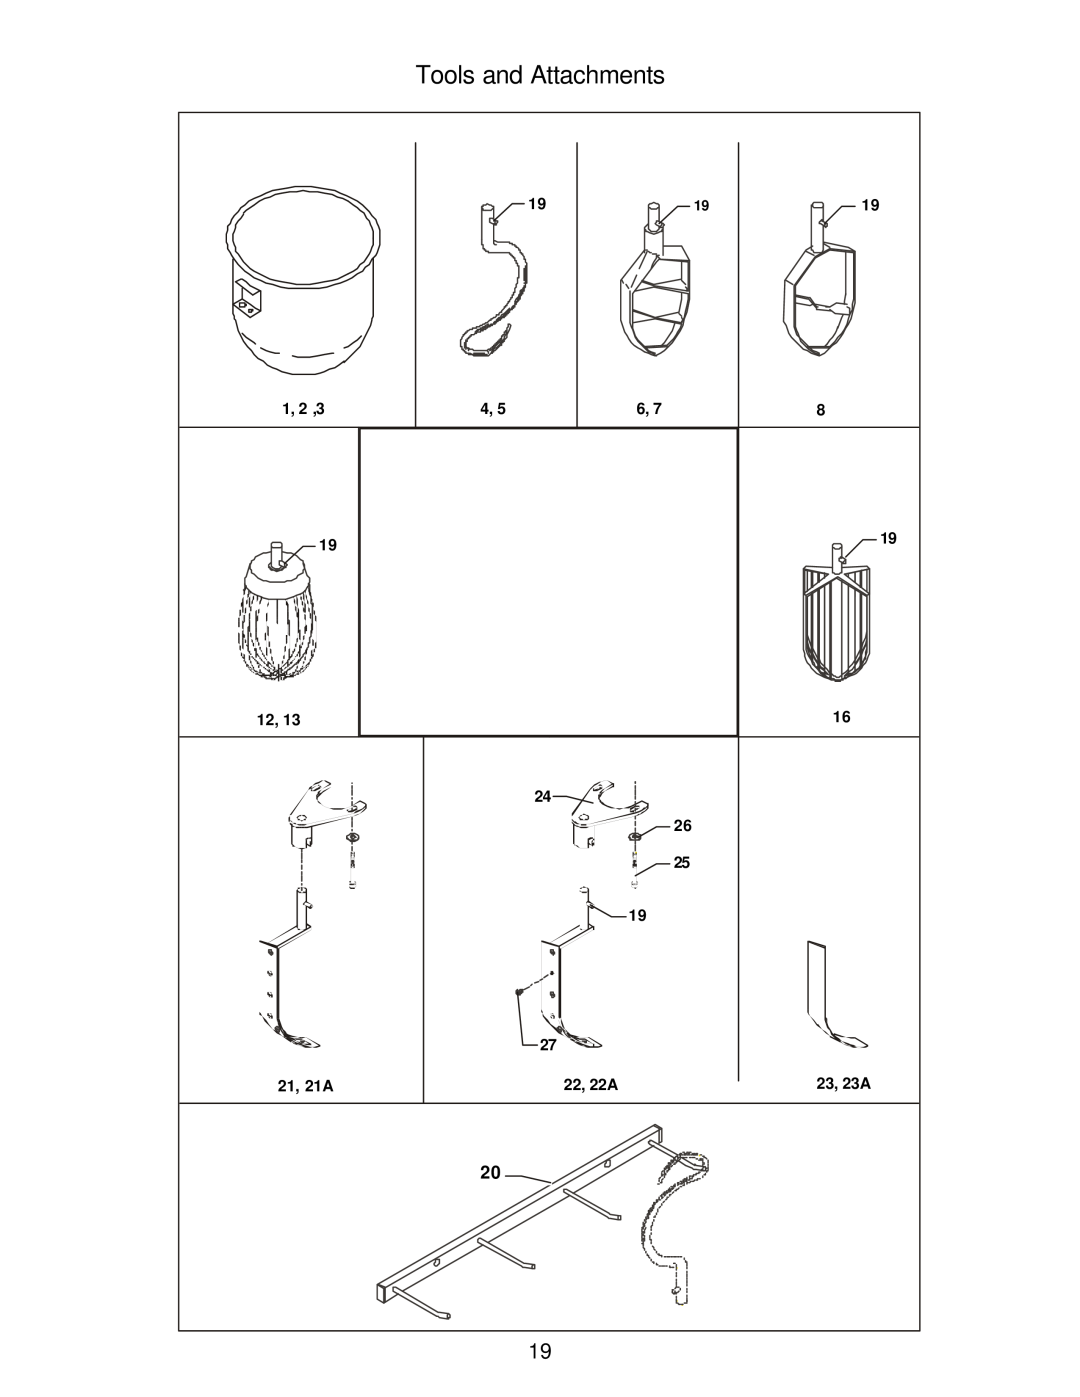 Varimixer W20D operation manual Tools and Attachments, 1, 2 ,3, 21, 21A, 22, 22A, 23, 23A 